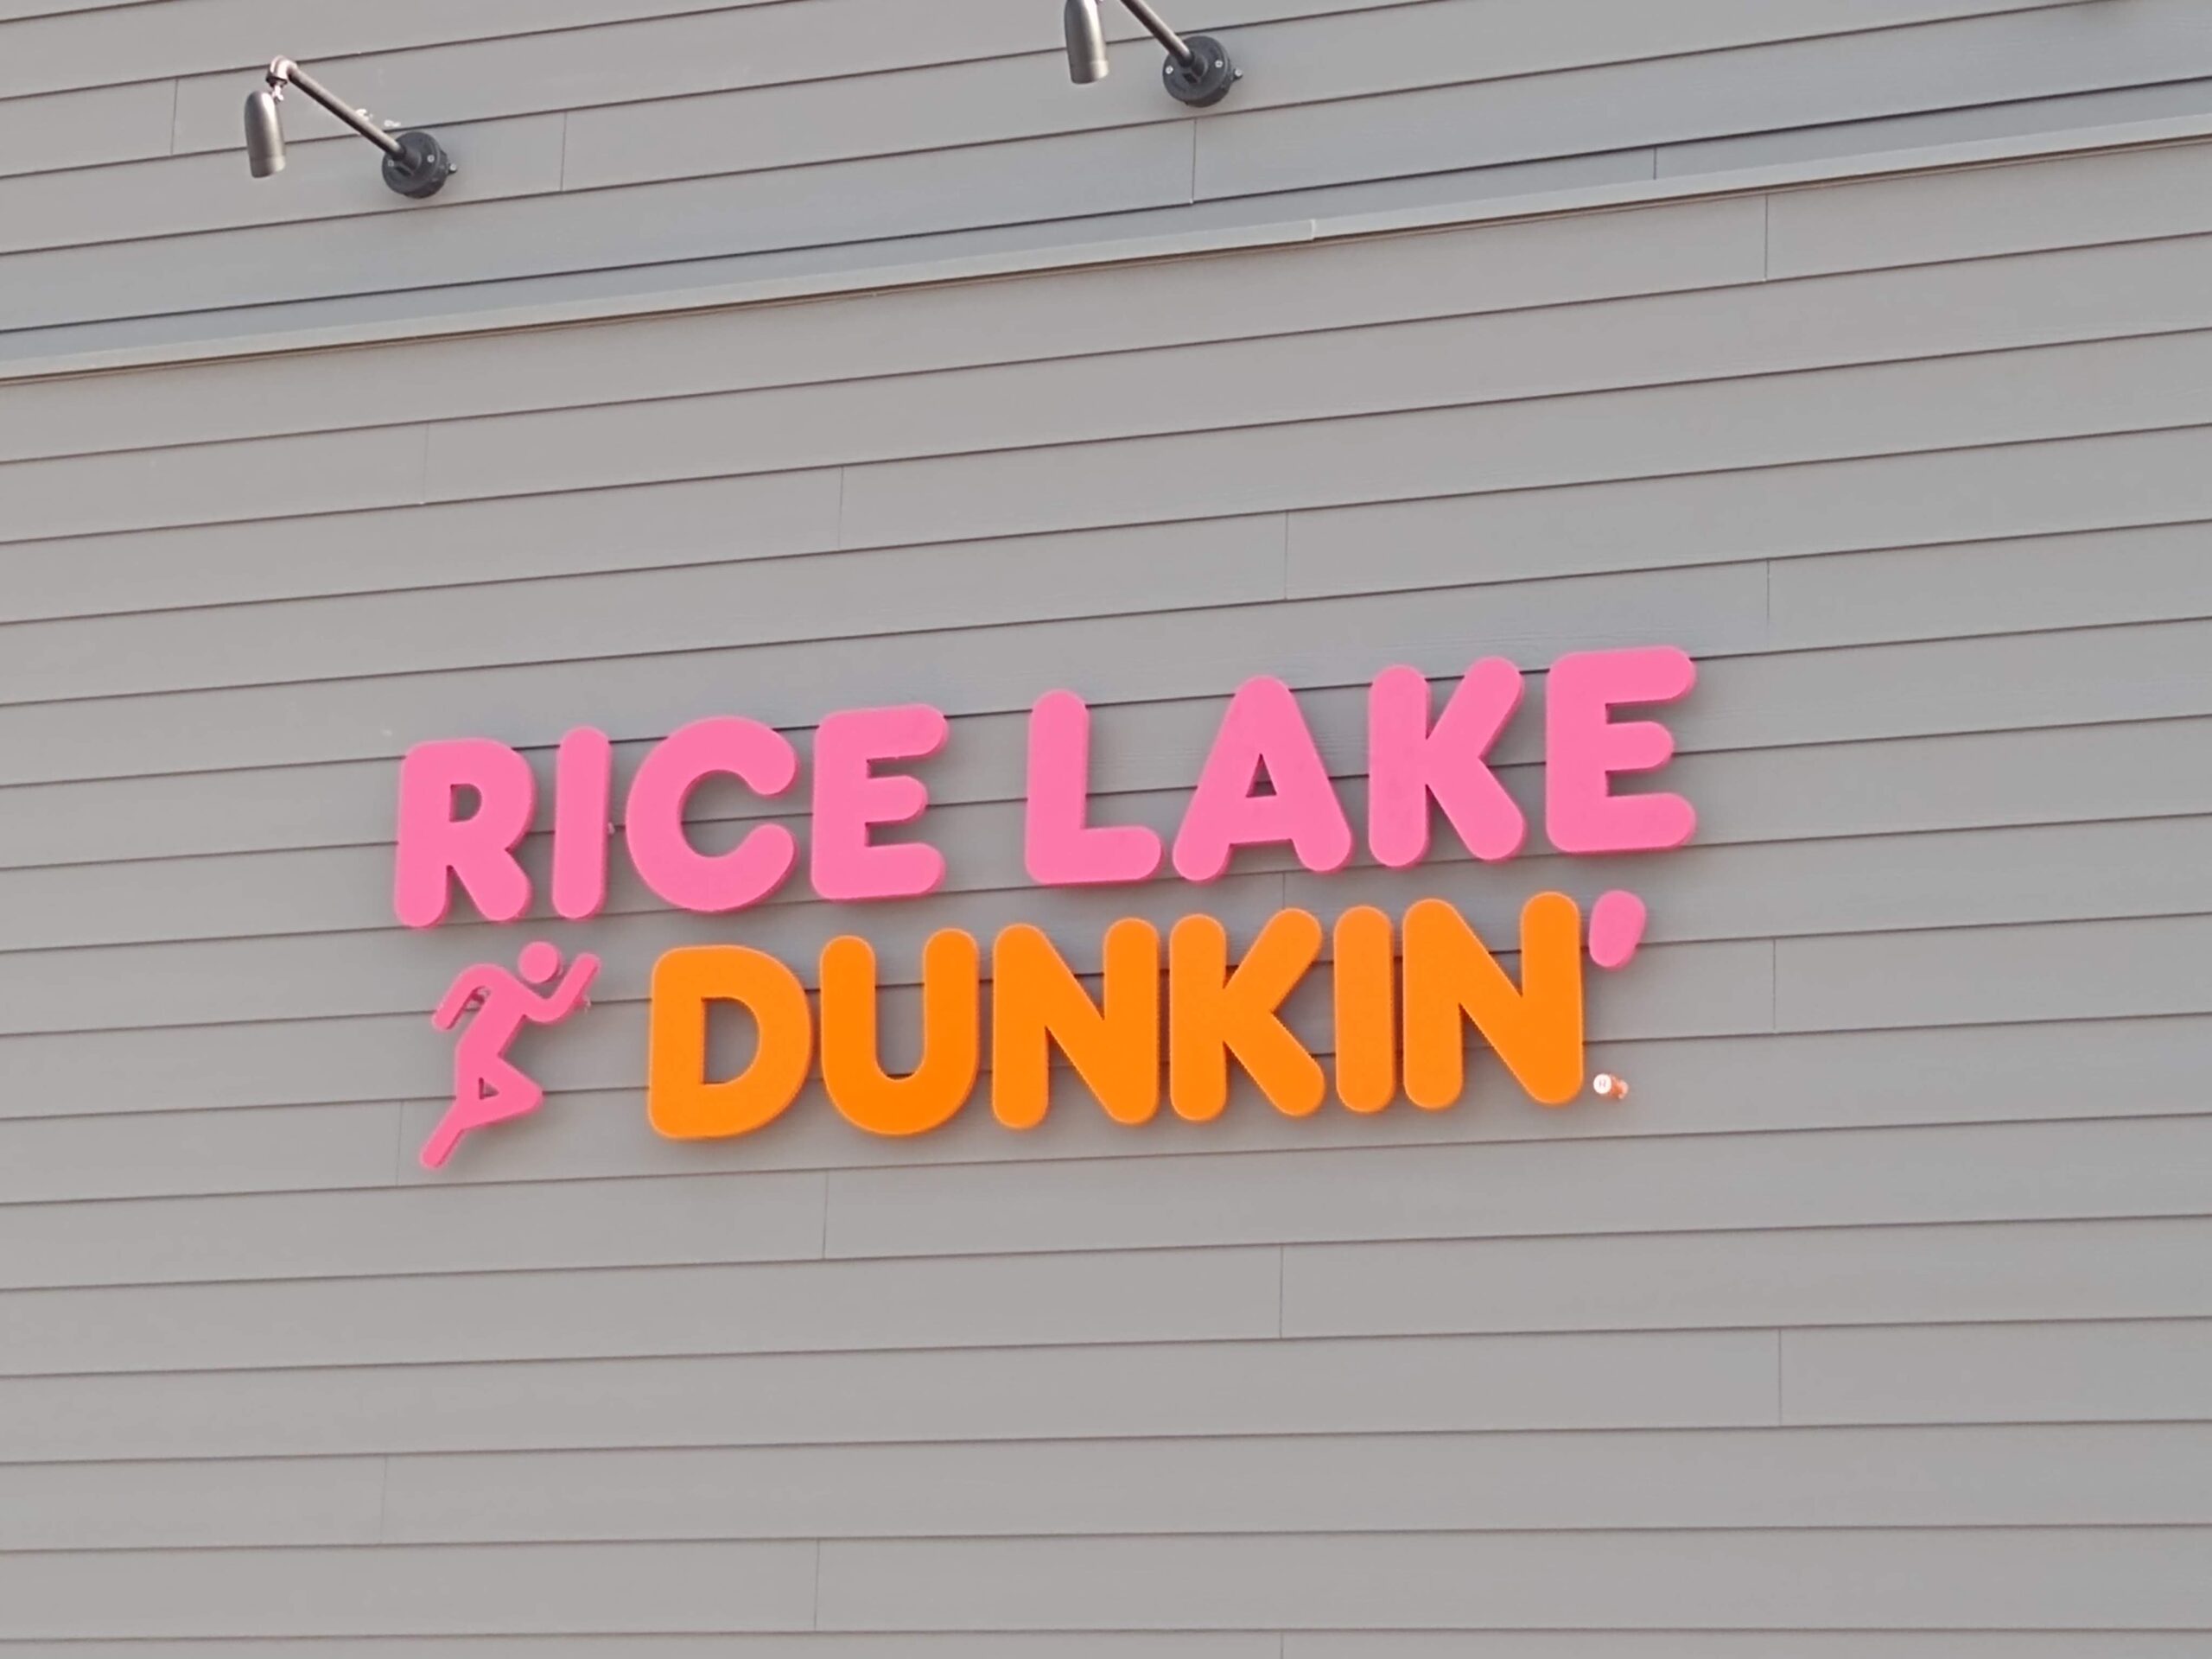 Rice Lake Dunkin' sign